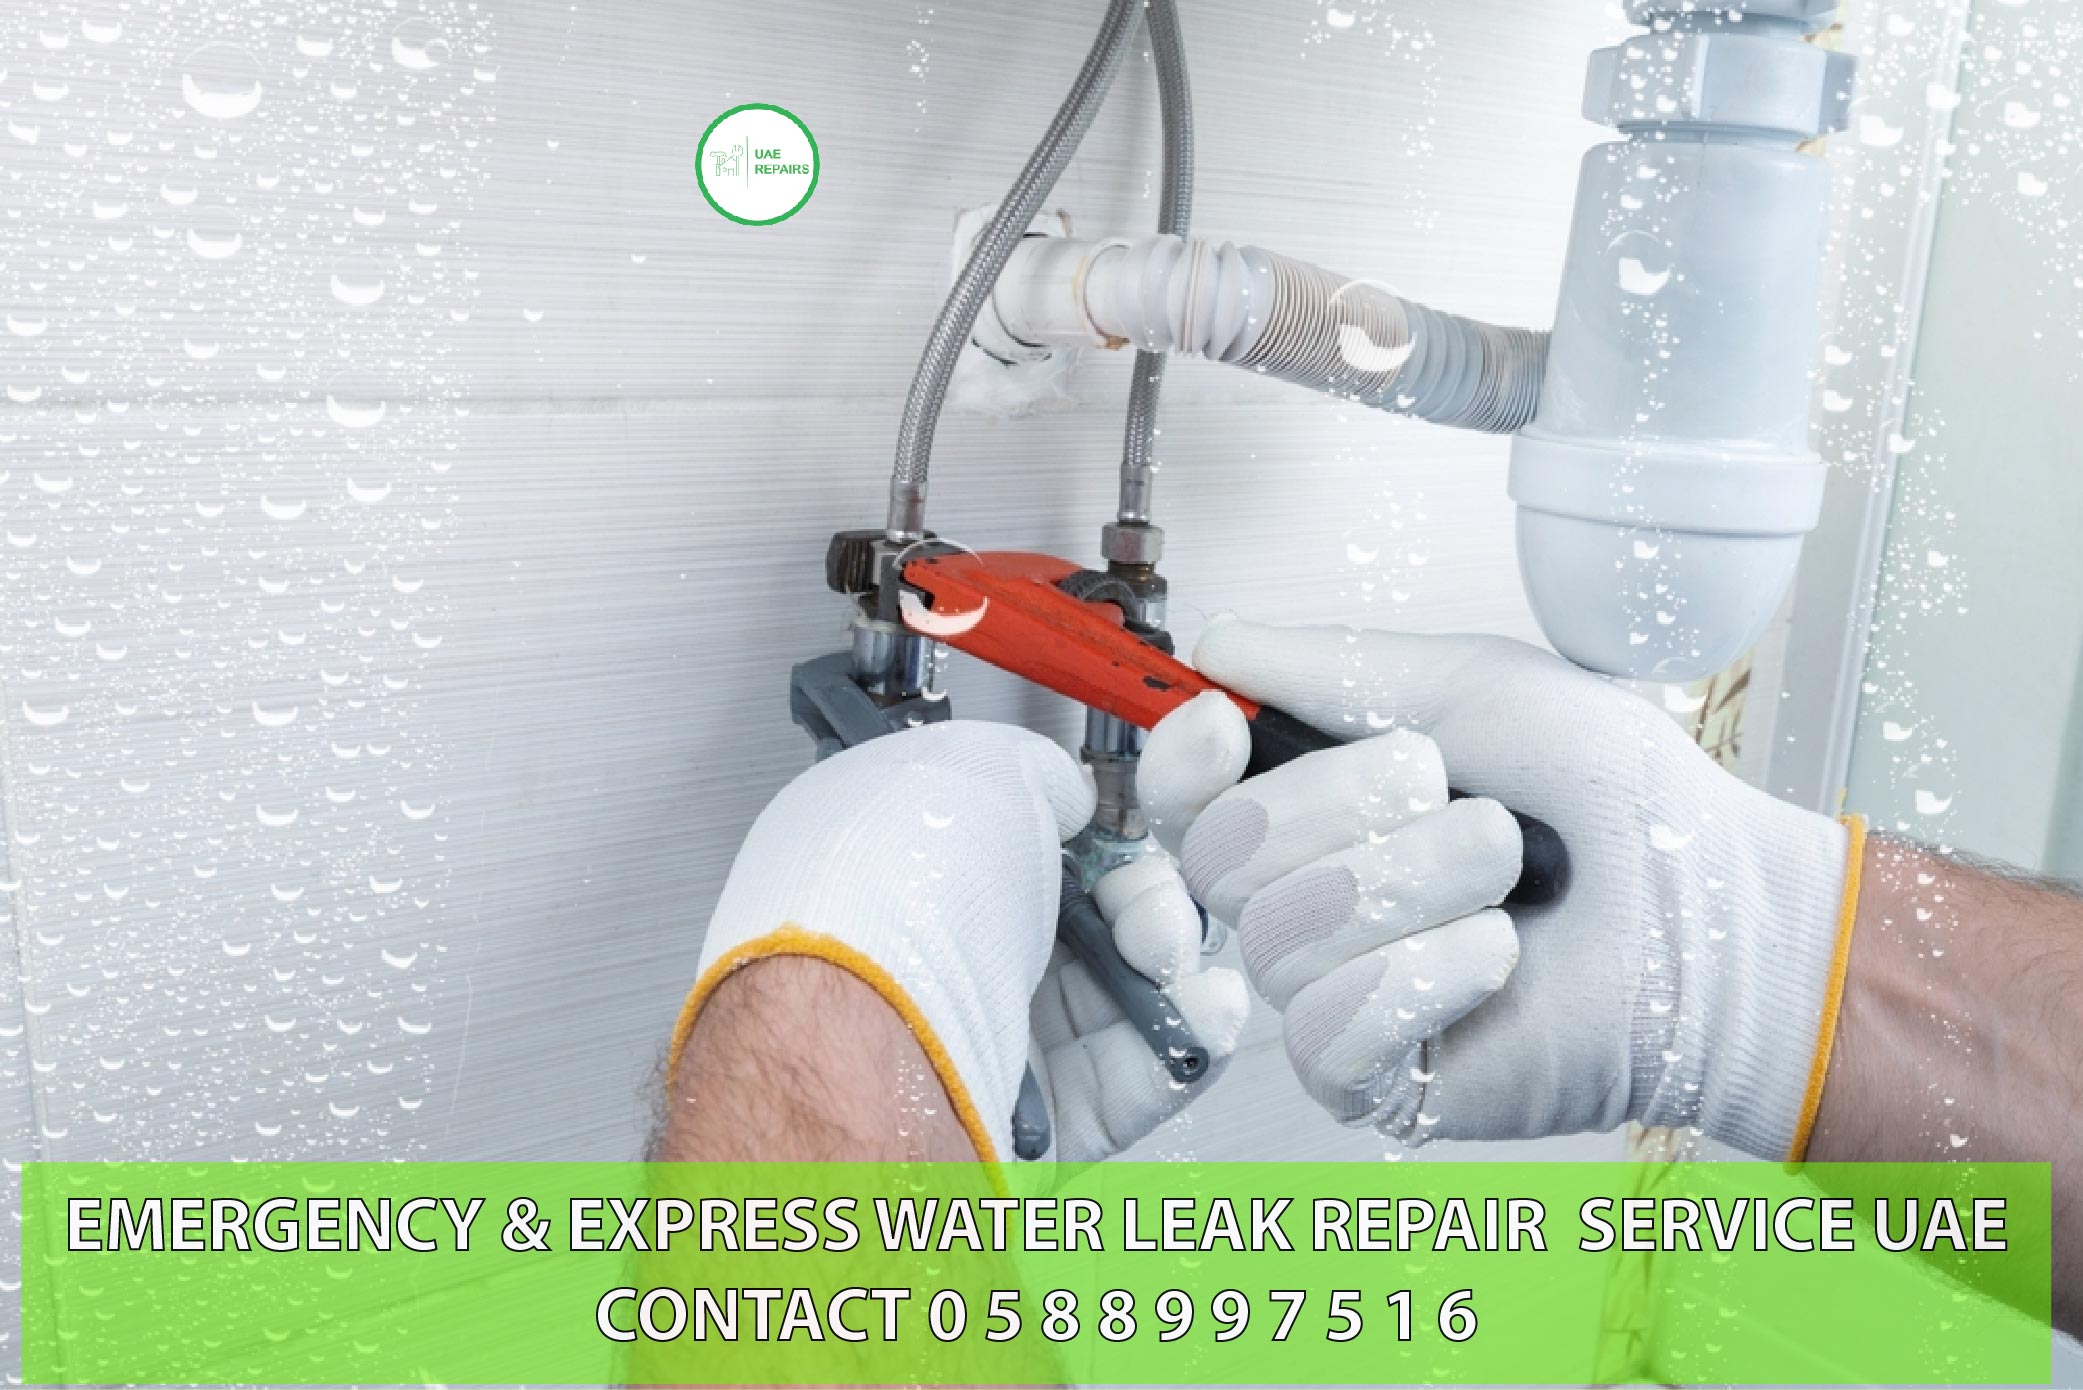 Emergency water leak repair service in UAE 0588997516